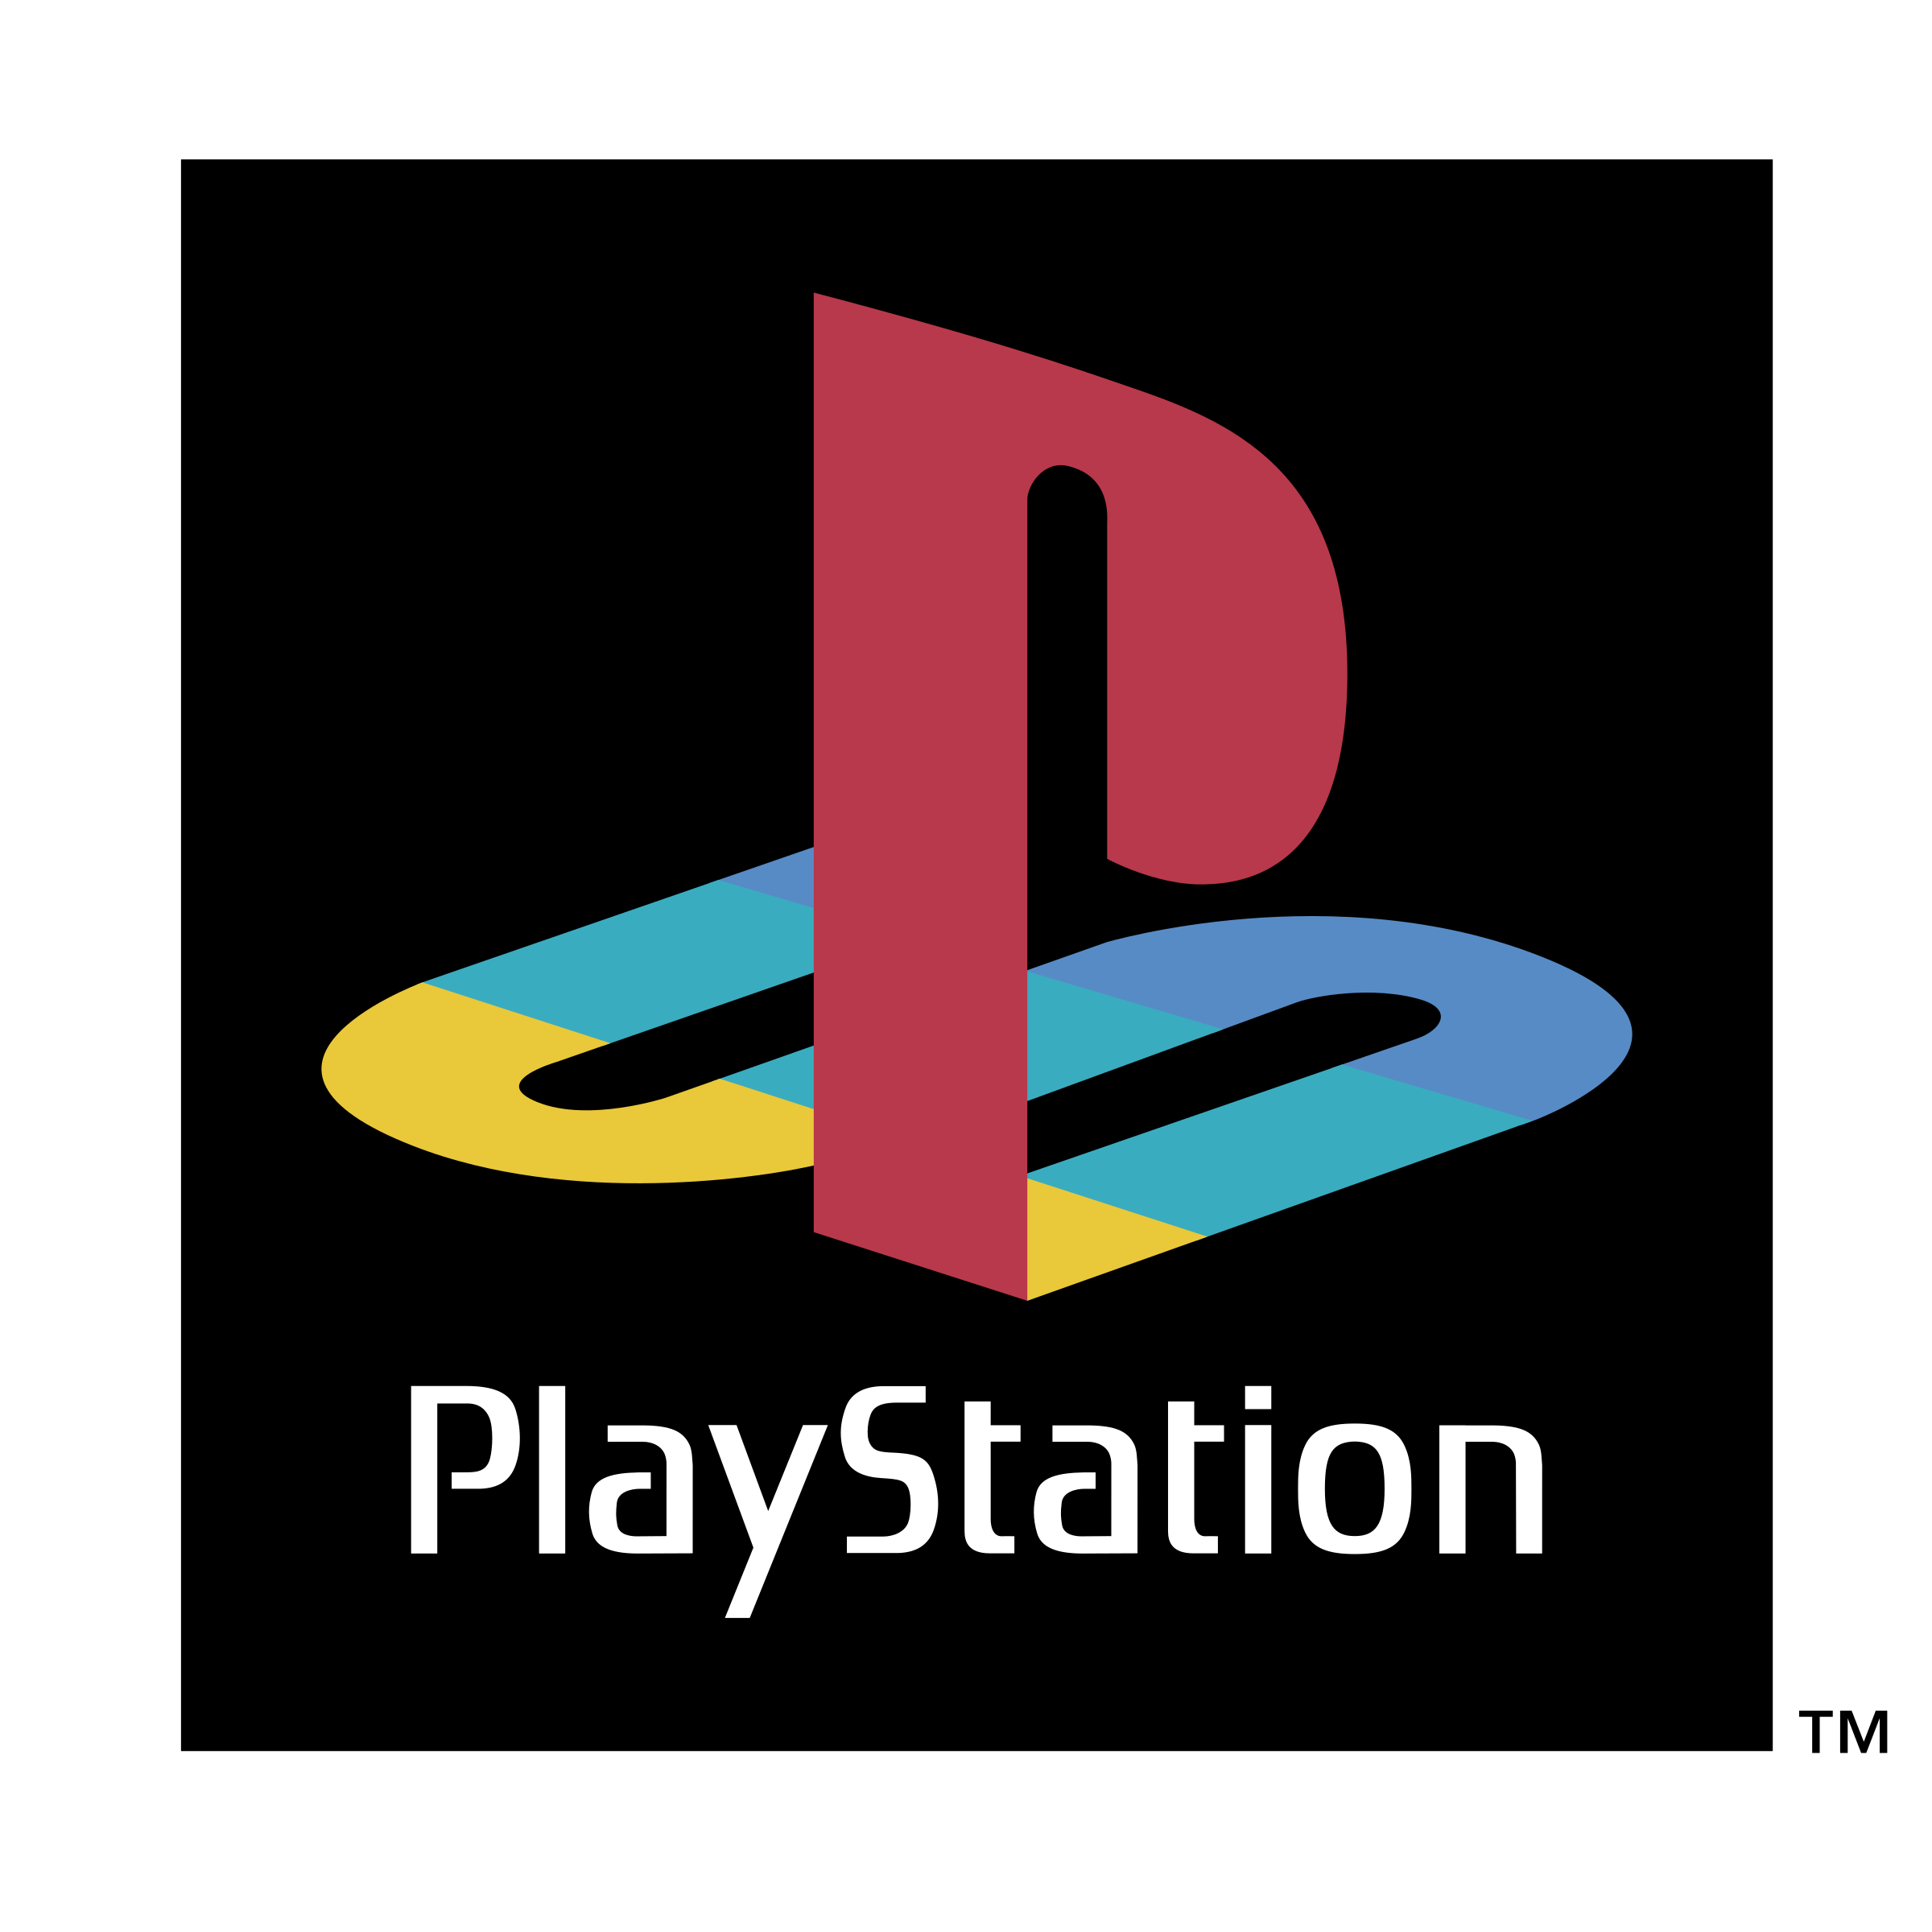 Playstatino Logo - PlayStation Logo PNG Transparent & SVG Vector